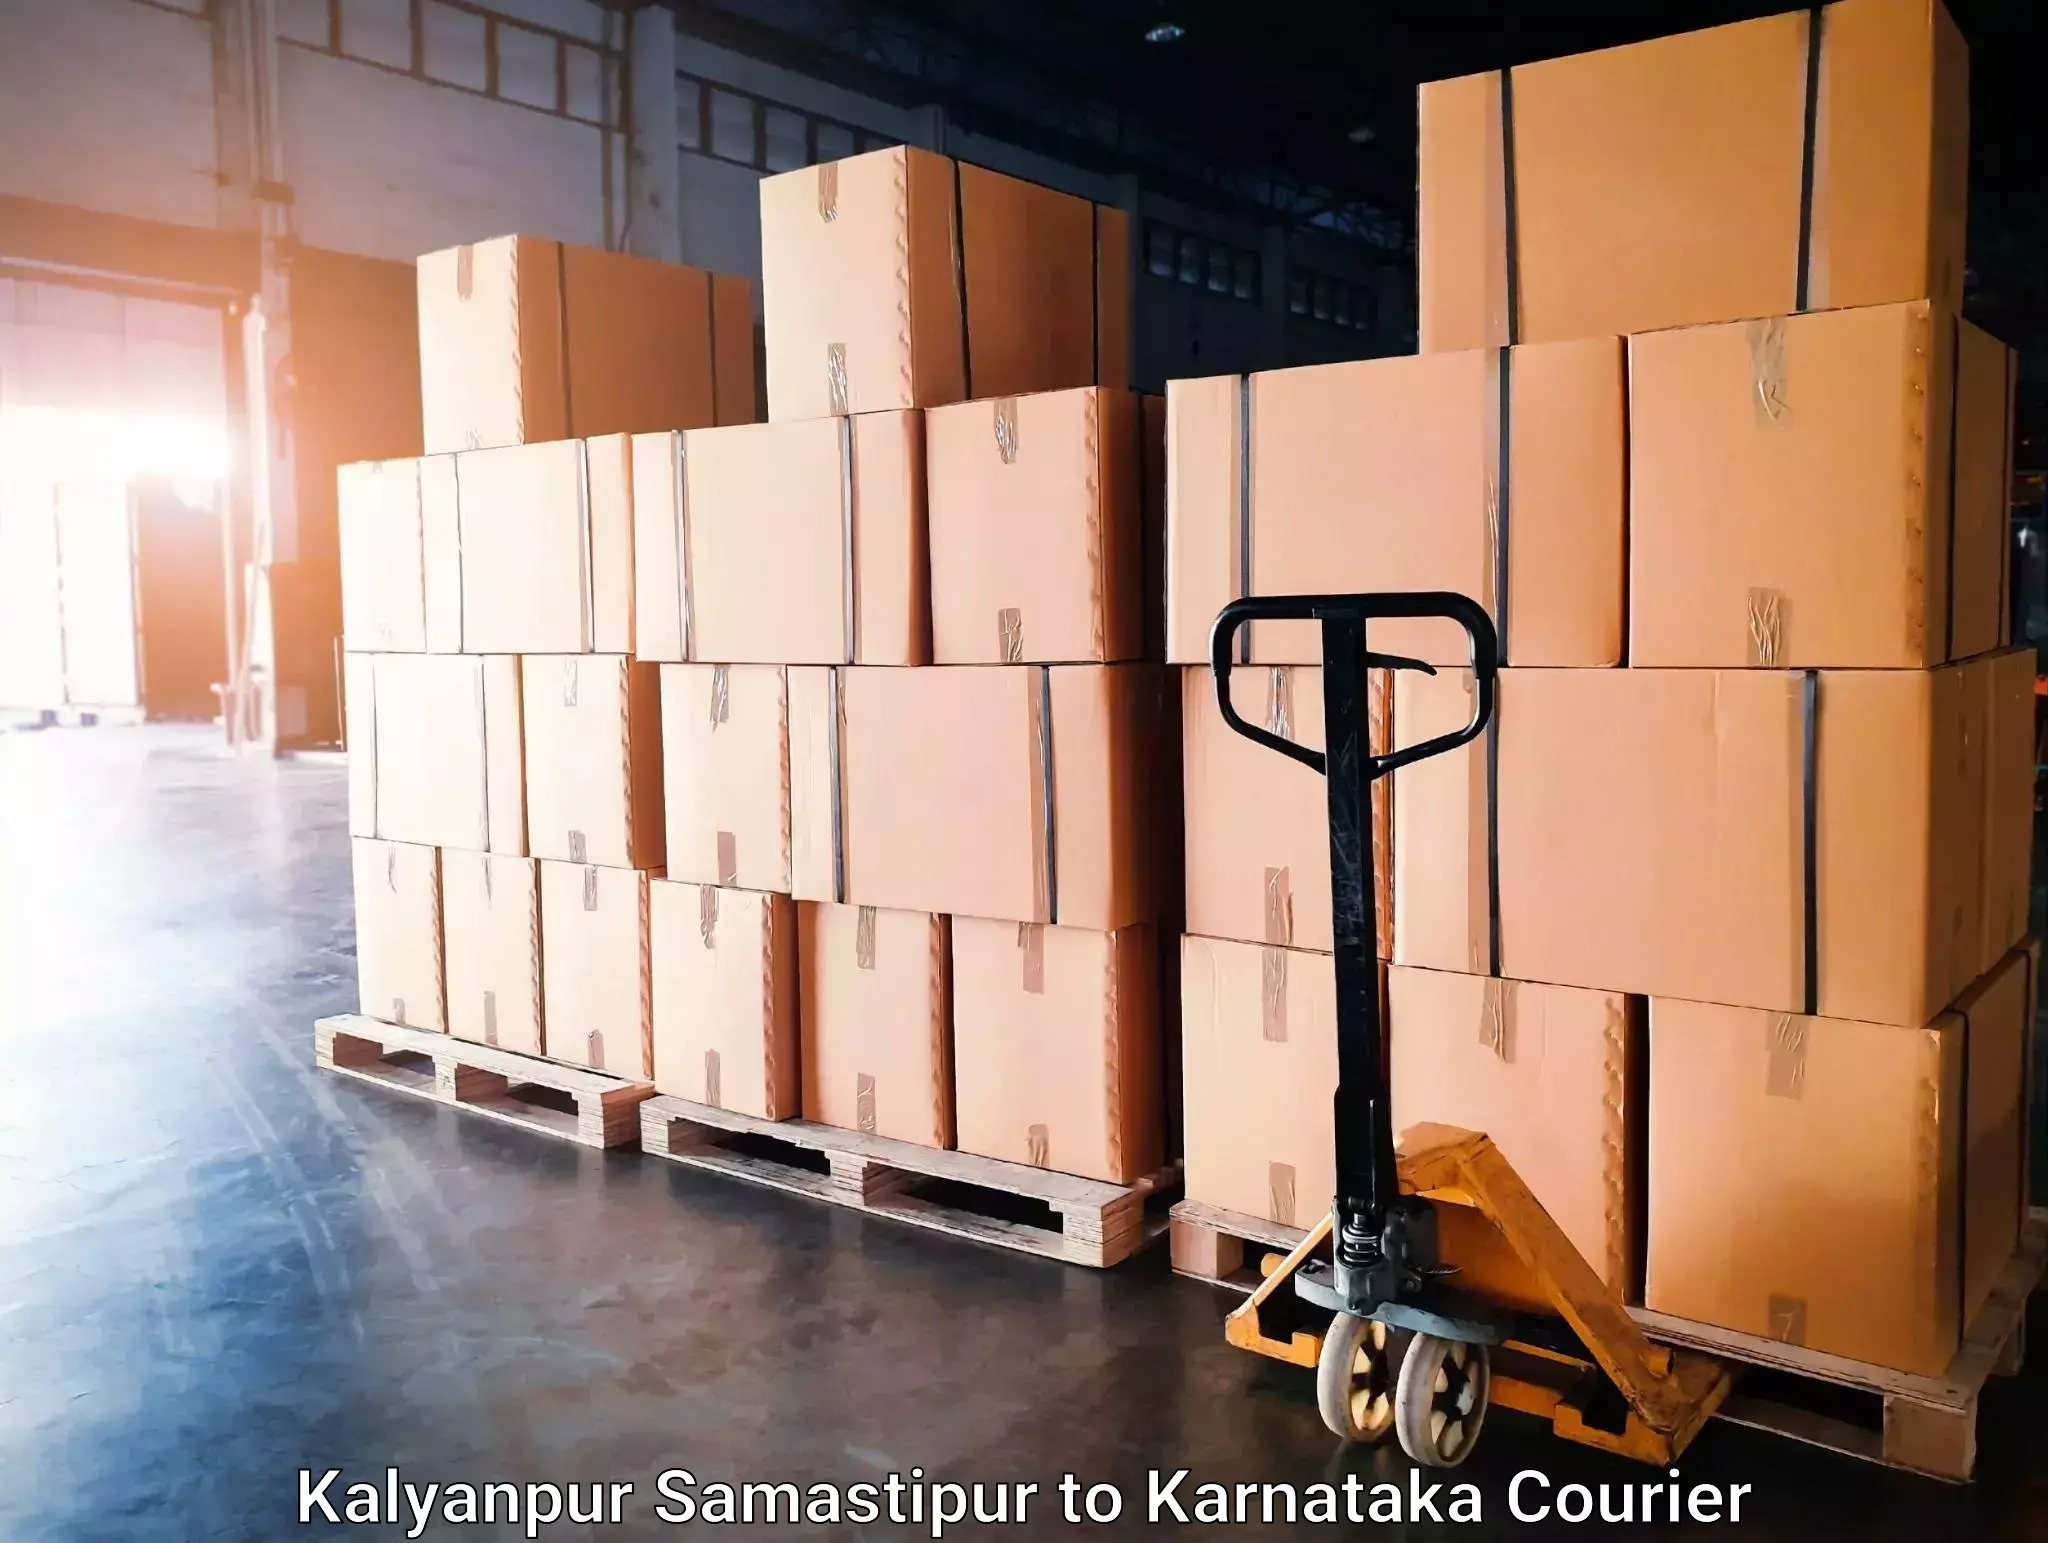 Furniture transport experts in Kalyanpur Samastipur to Karnataka